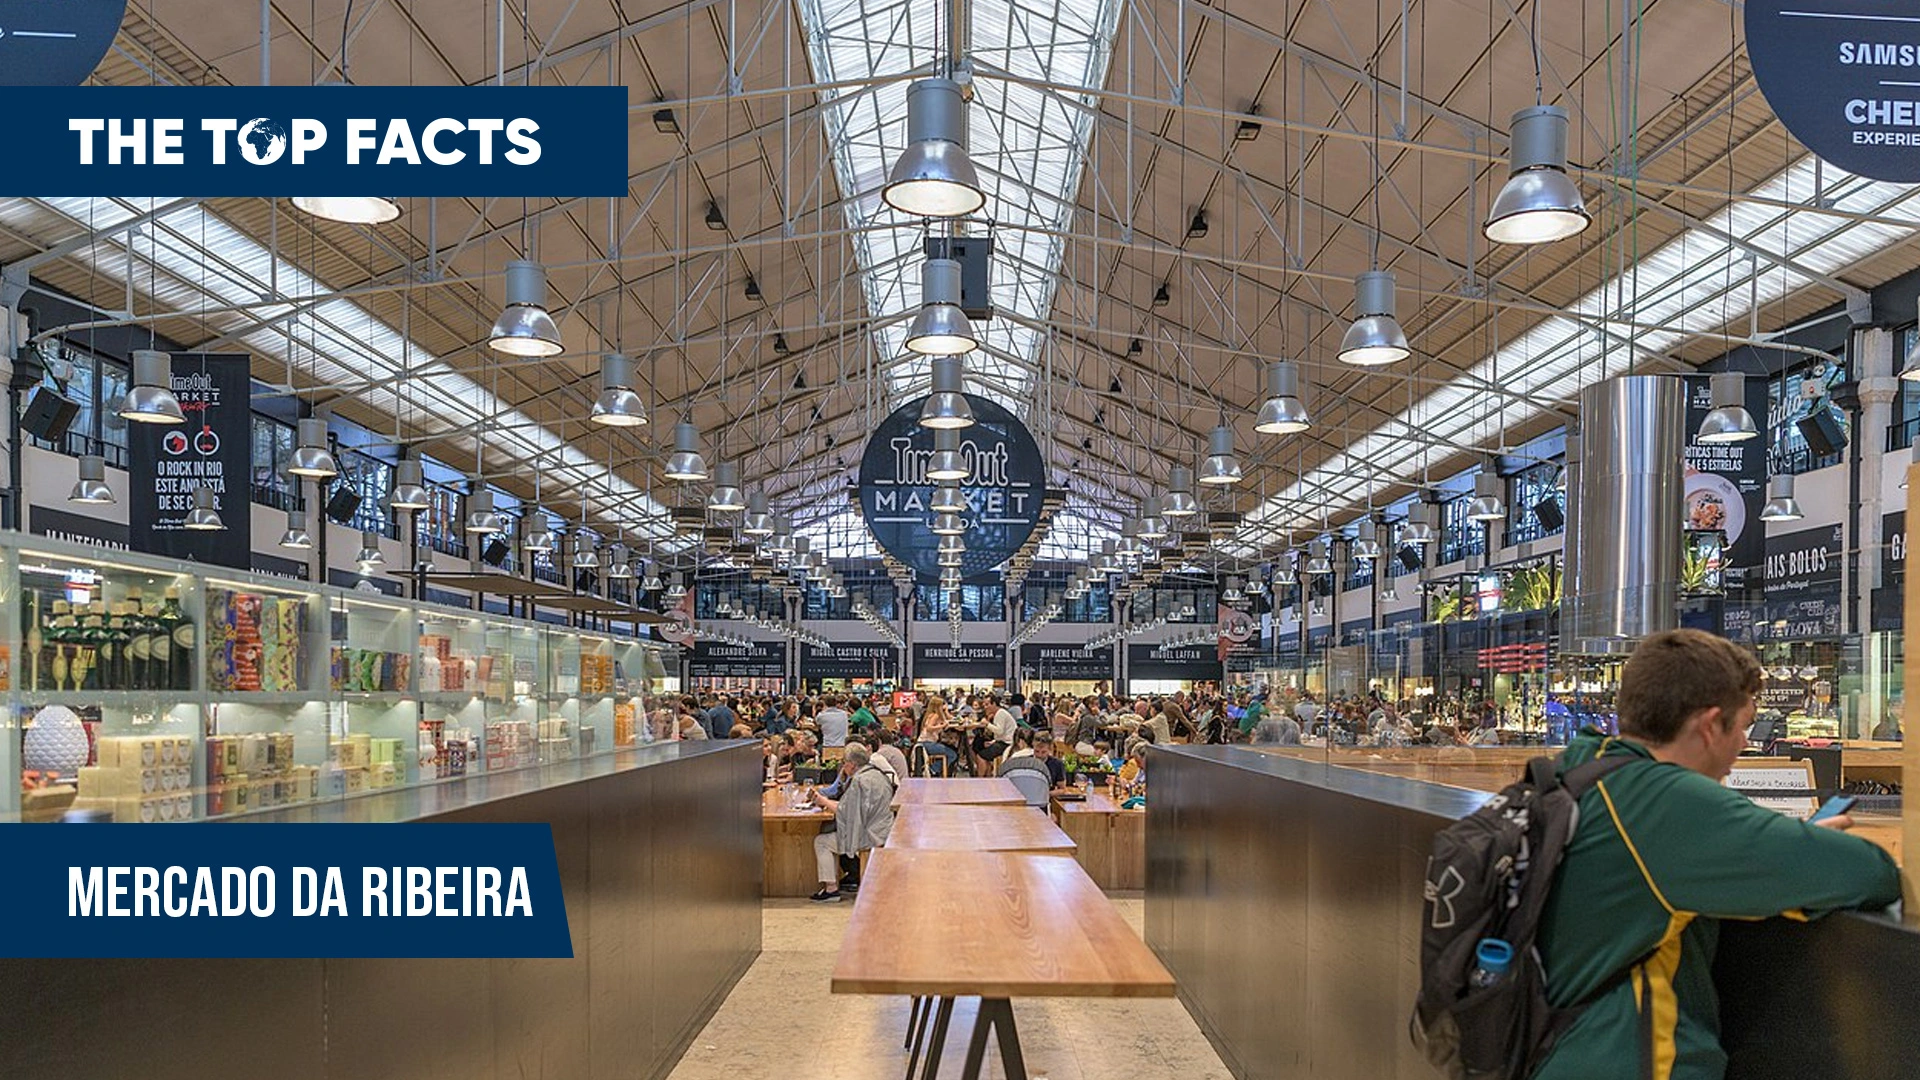 Ribeira Market - A Vibrant hub of Local Foods and Culture: Mercado da Ribeira